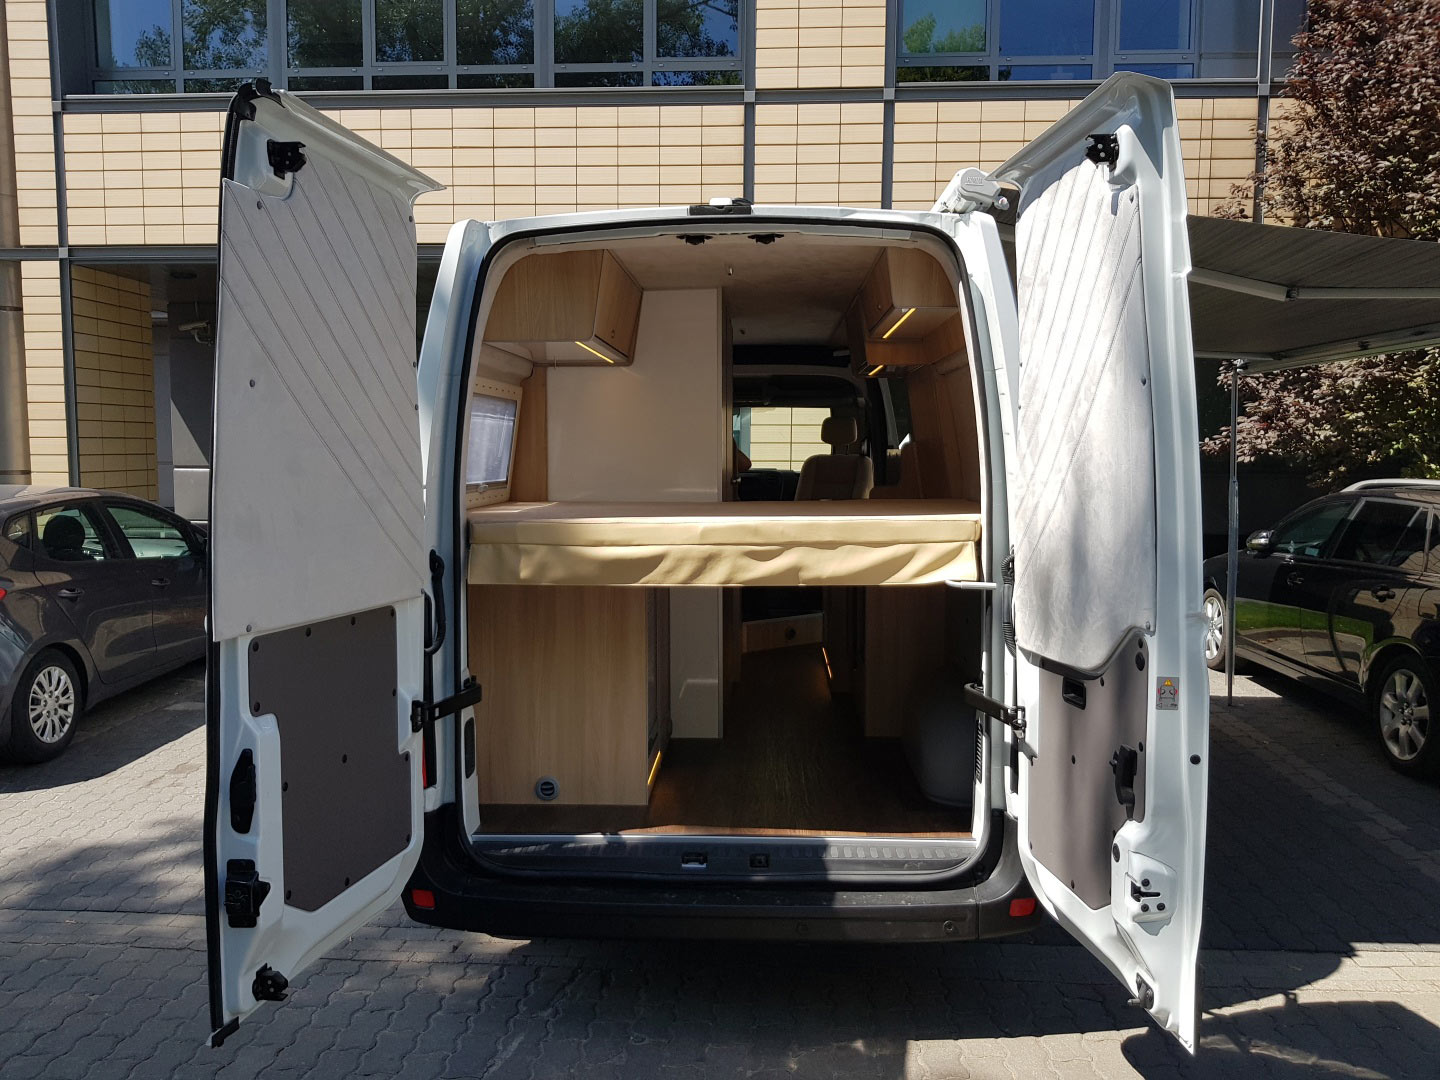 Sypialnia kamper Opel Movano tylne drzwi otwarte